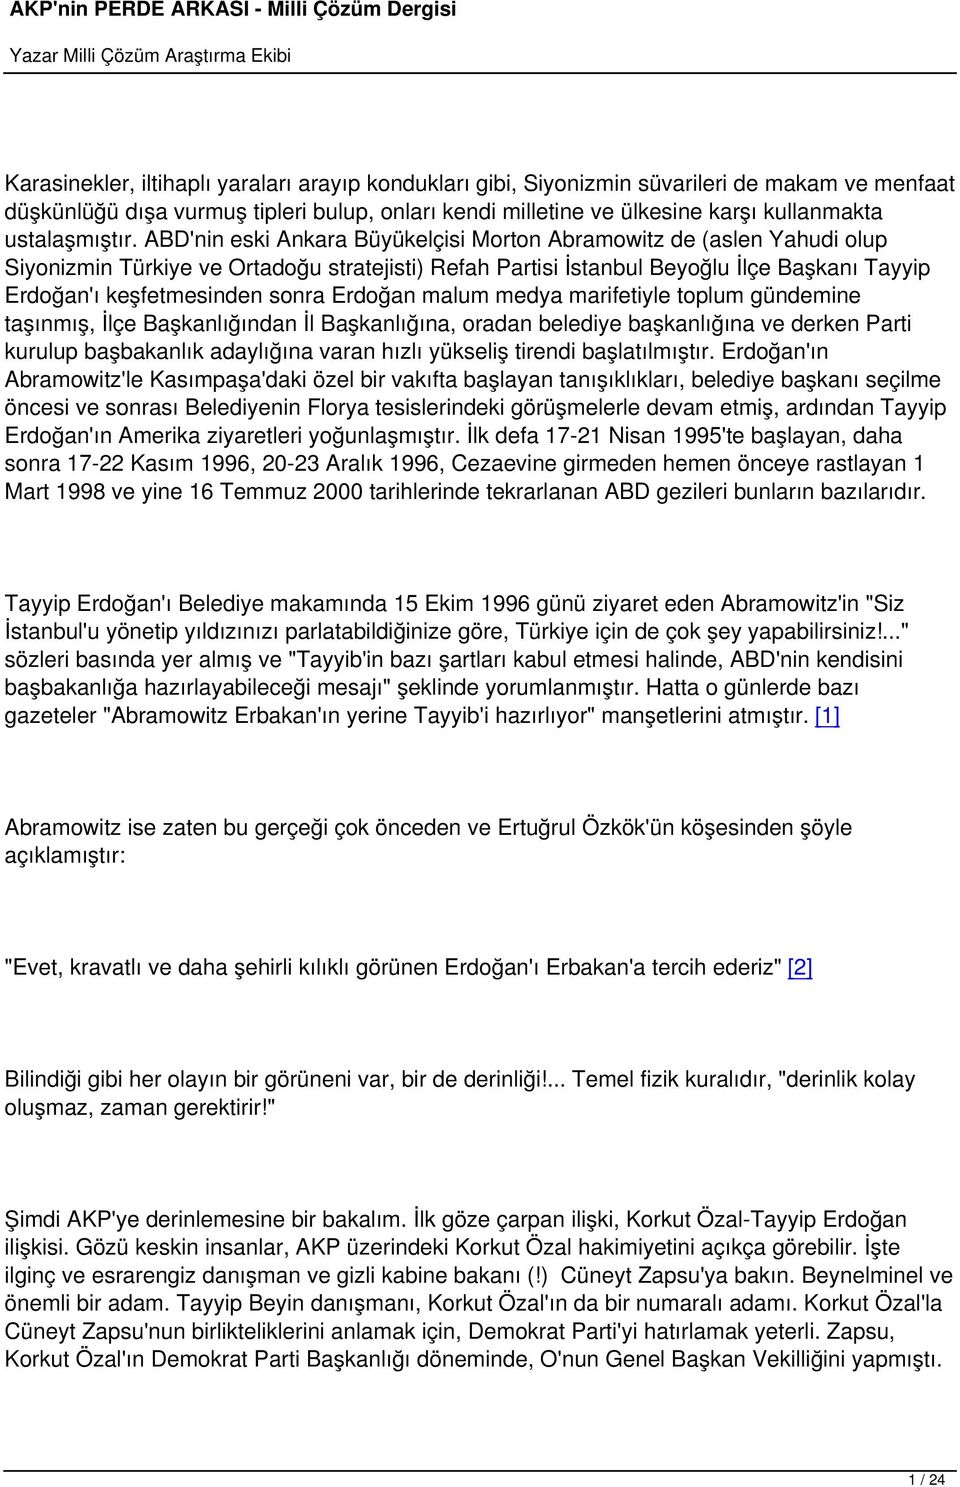 ABD'nin eski Ankara Büyükelçisi Morton Abramowitz de (aslen Yahudi olup Siyonizmin Türkiye ve Ortadoğu stratejisti) Refah Partisi İstanbul Beyoğlu İlçe Başkanı Tayyip Erdoğan'ı keşfetmesinden sonra